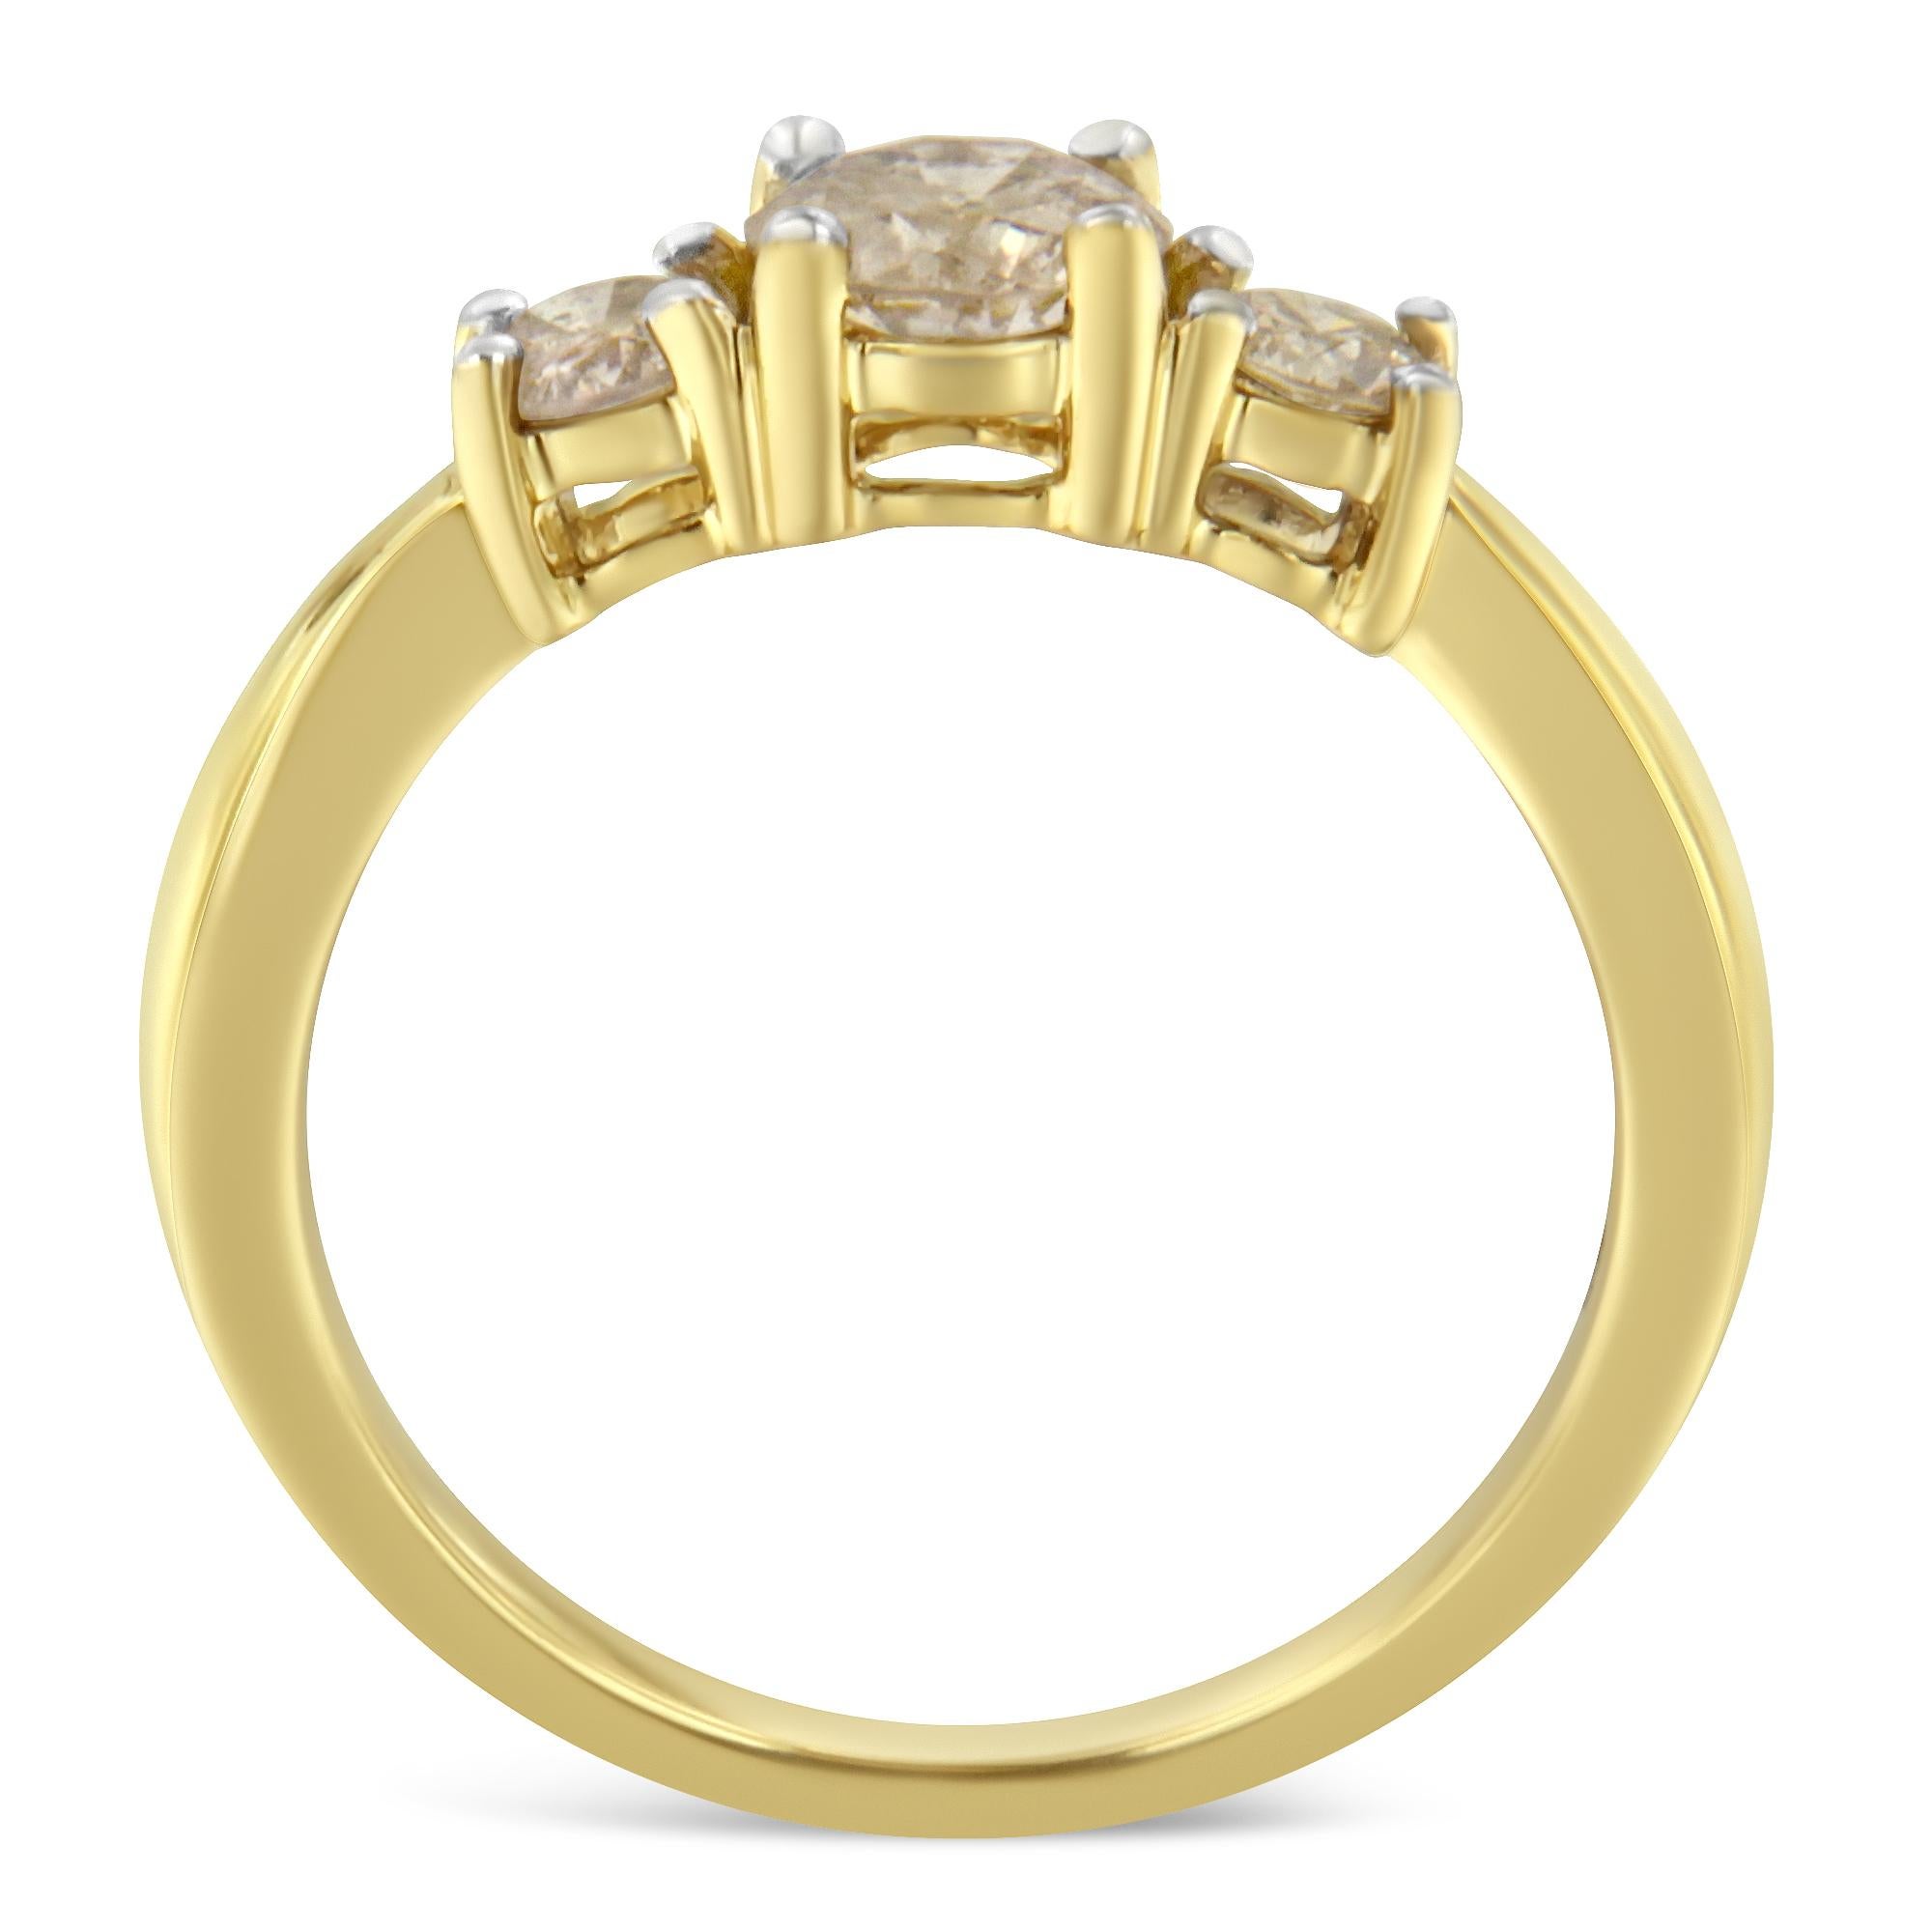 Dieser atemberaubende Jubiläumsring aus 10-karätigem Gelbgold ist mit einem Karat Diamanten in einem klassischen Drei-Steine-Design besetzt. Das Gelbgoldband sieht auf allen Hauttönen atemberaubend aus, während die drei mittleren Diamanten in